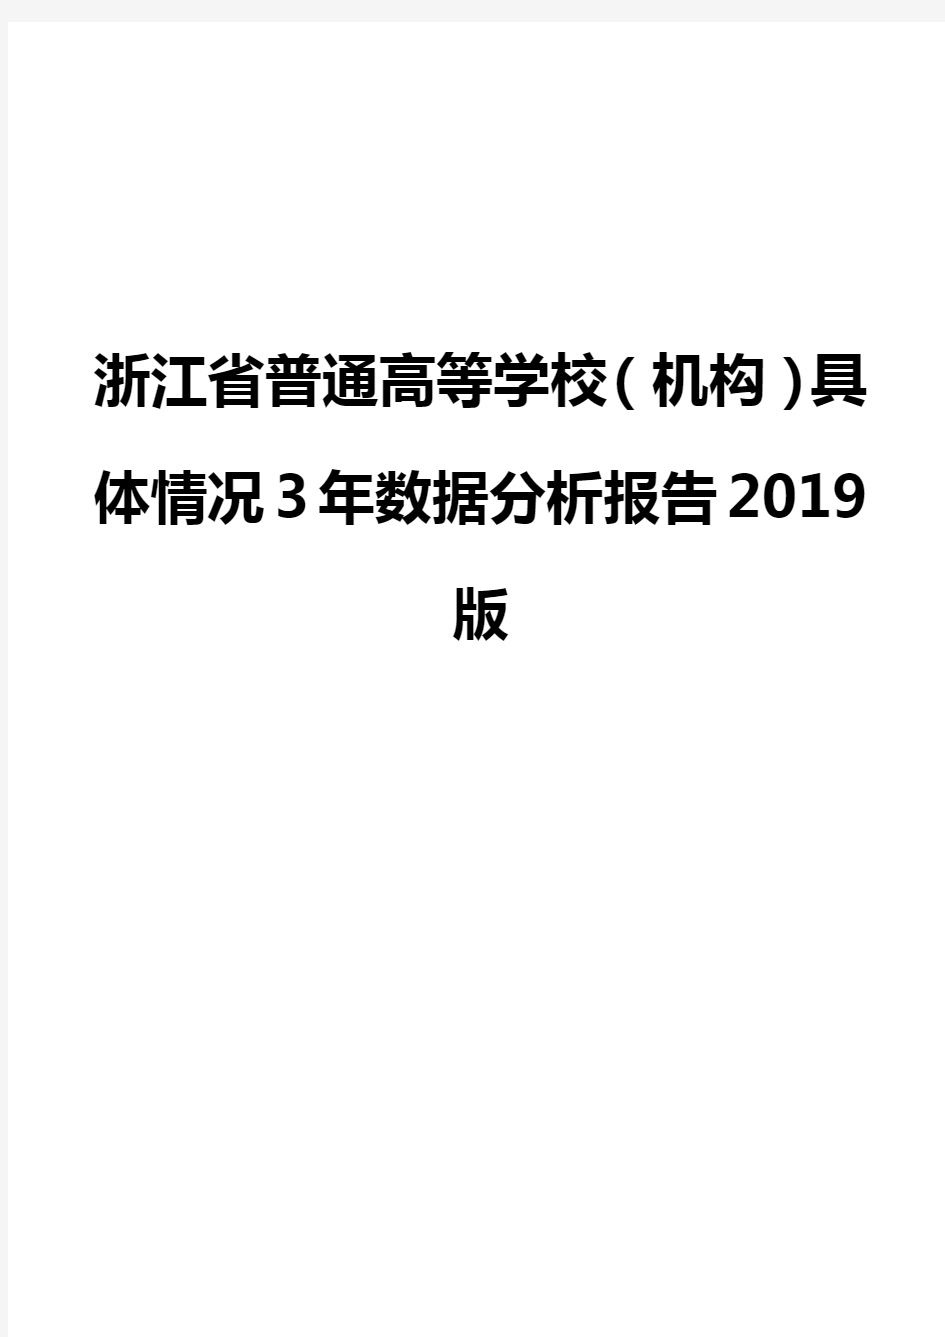 浙江省普通高等学校(机构)具体情况3年数据分析报告2019版